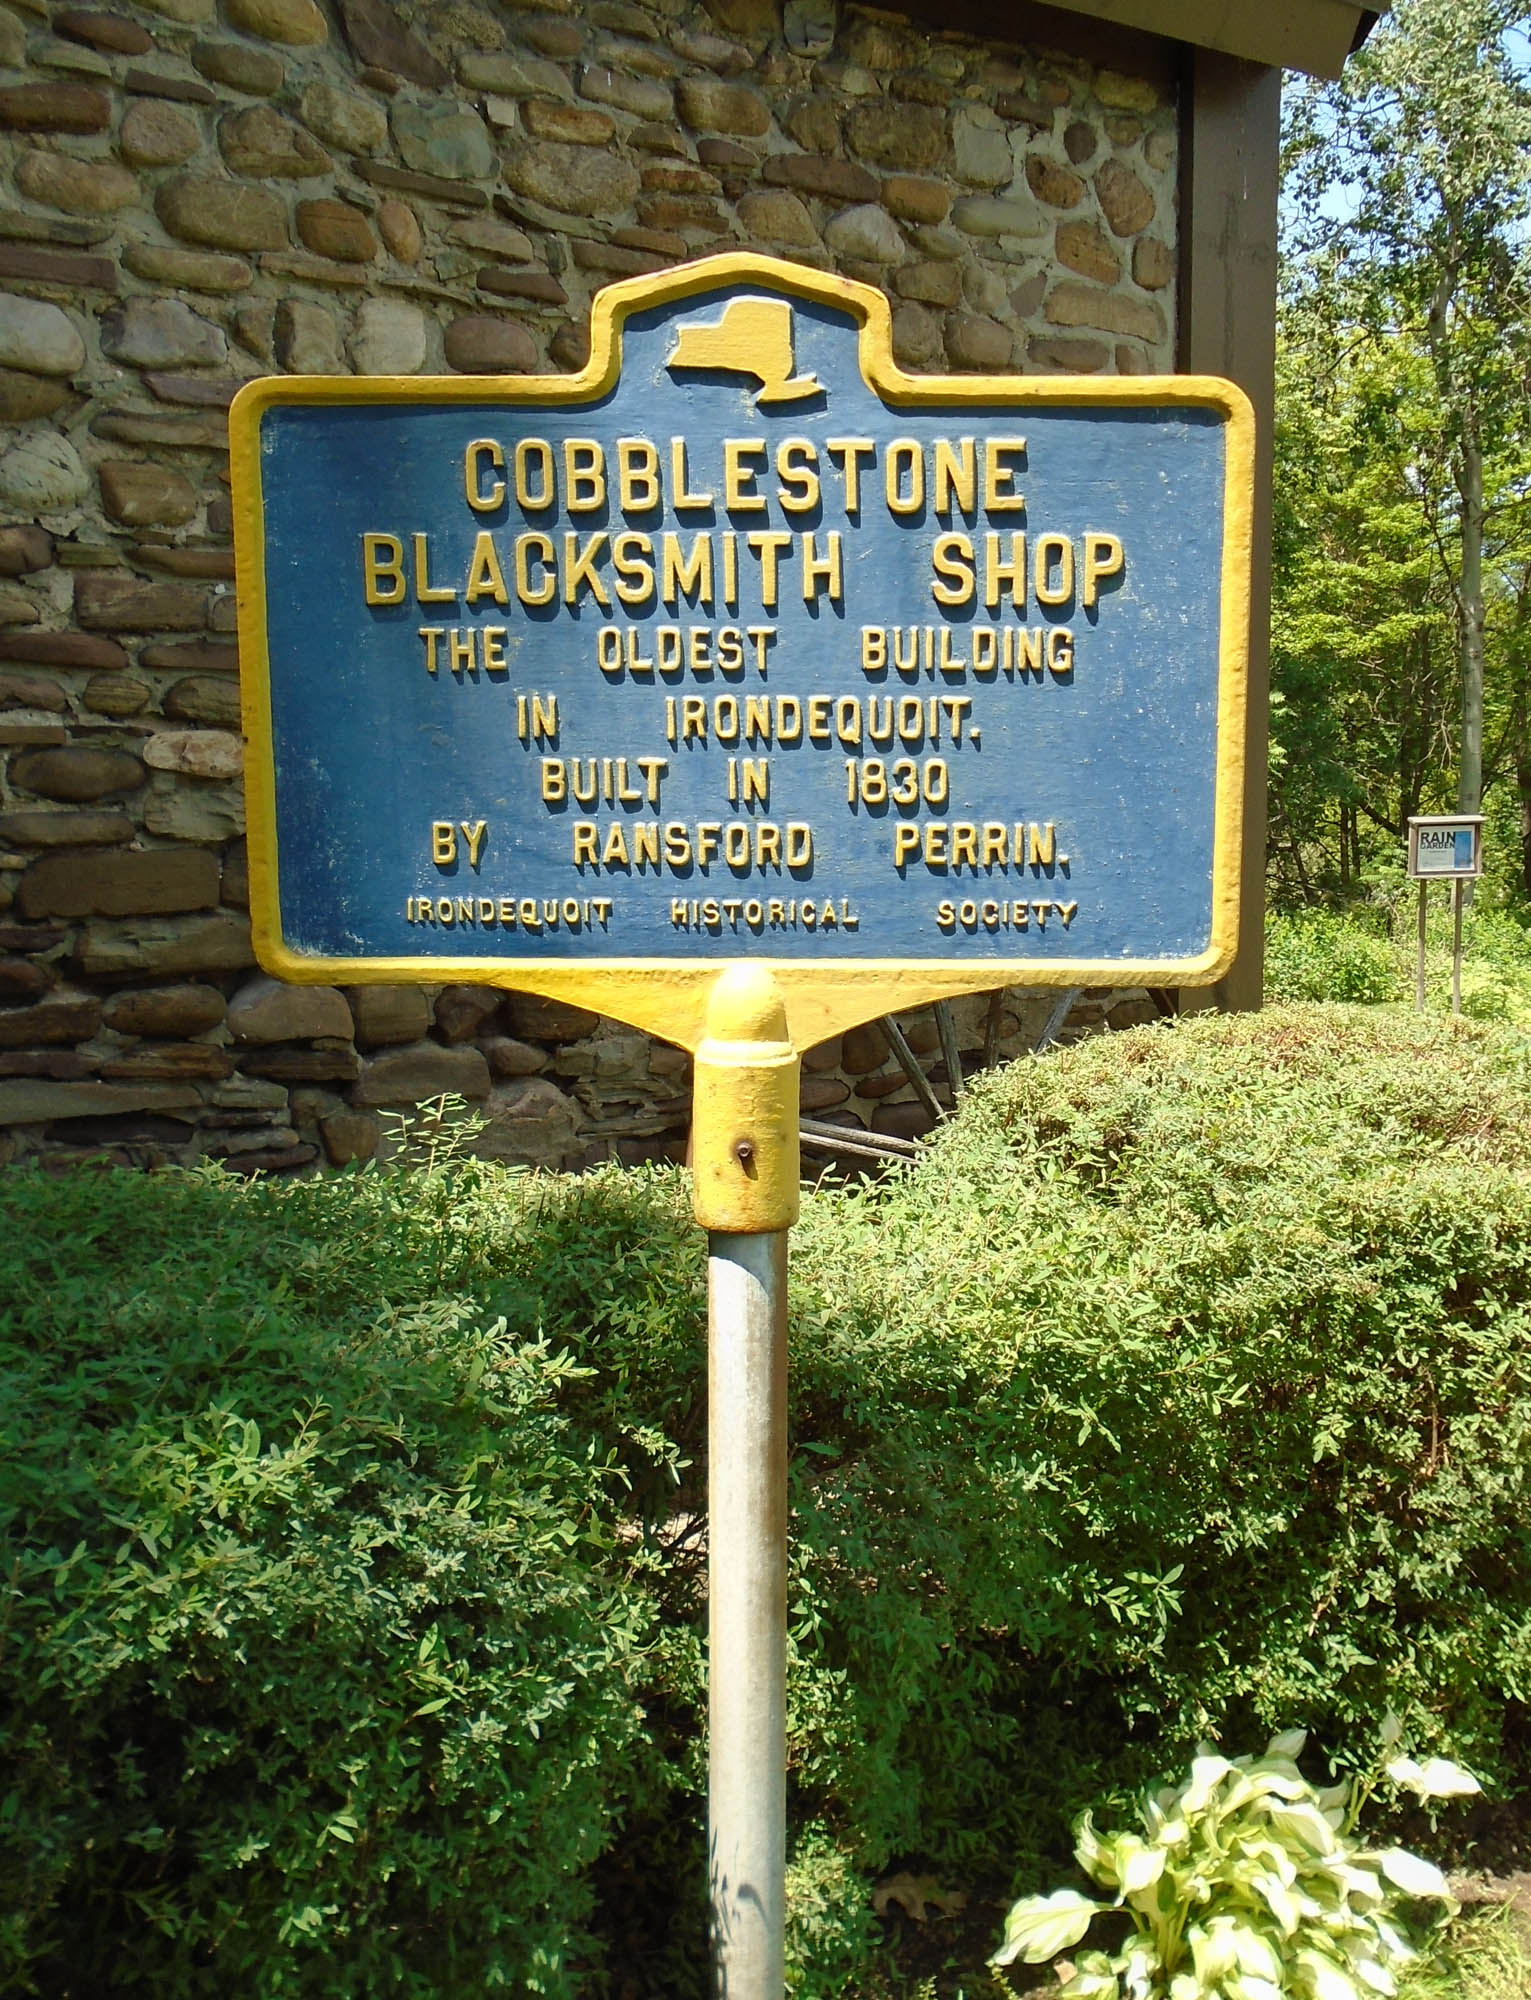 Blacksmith Shop, Irondequoit